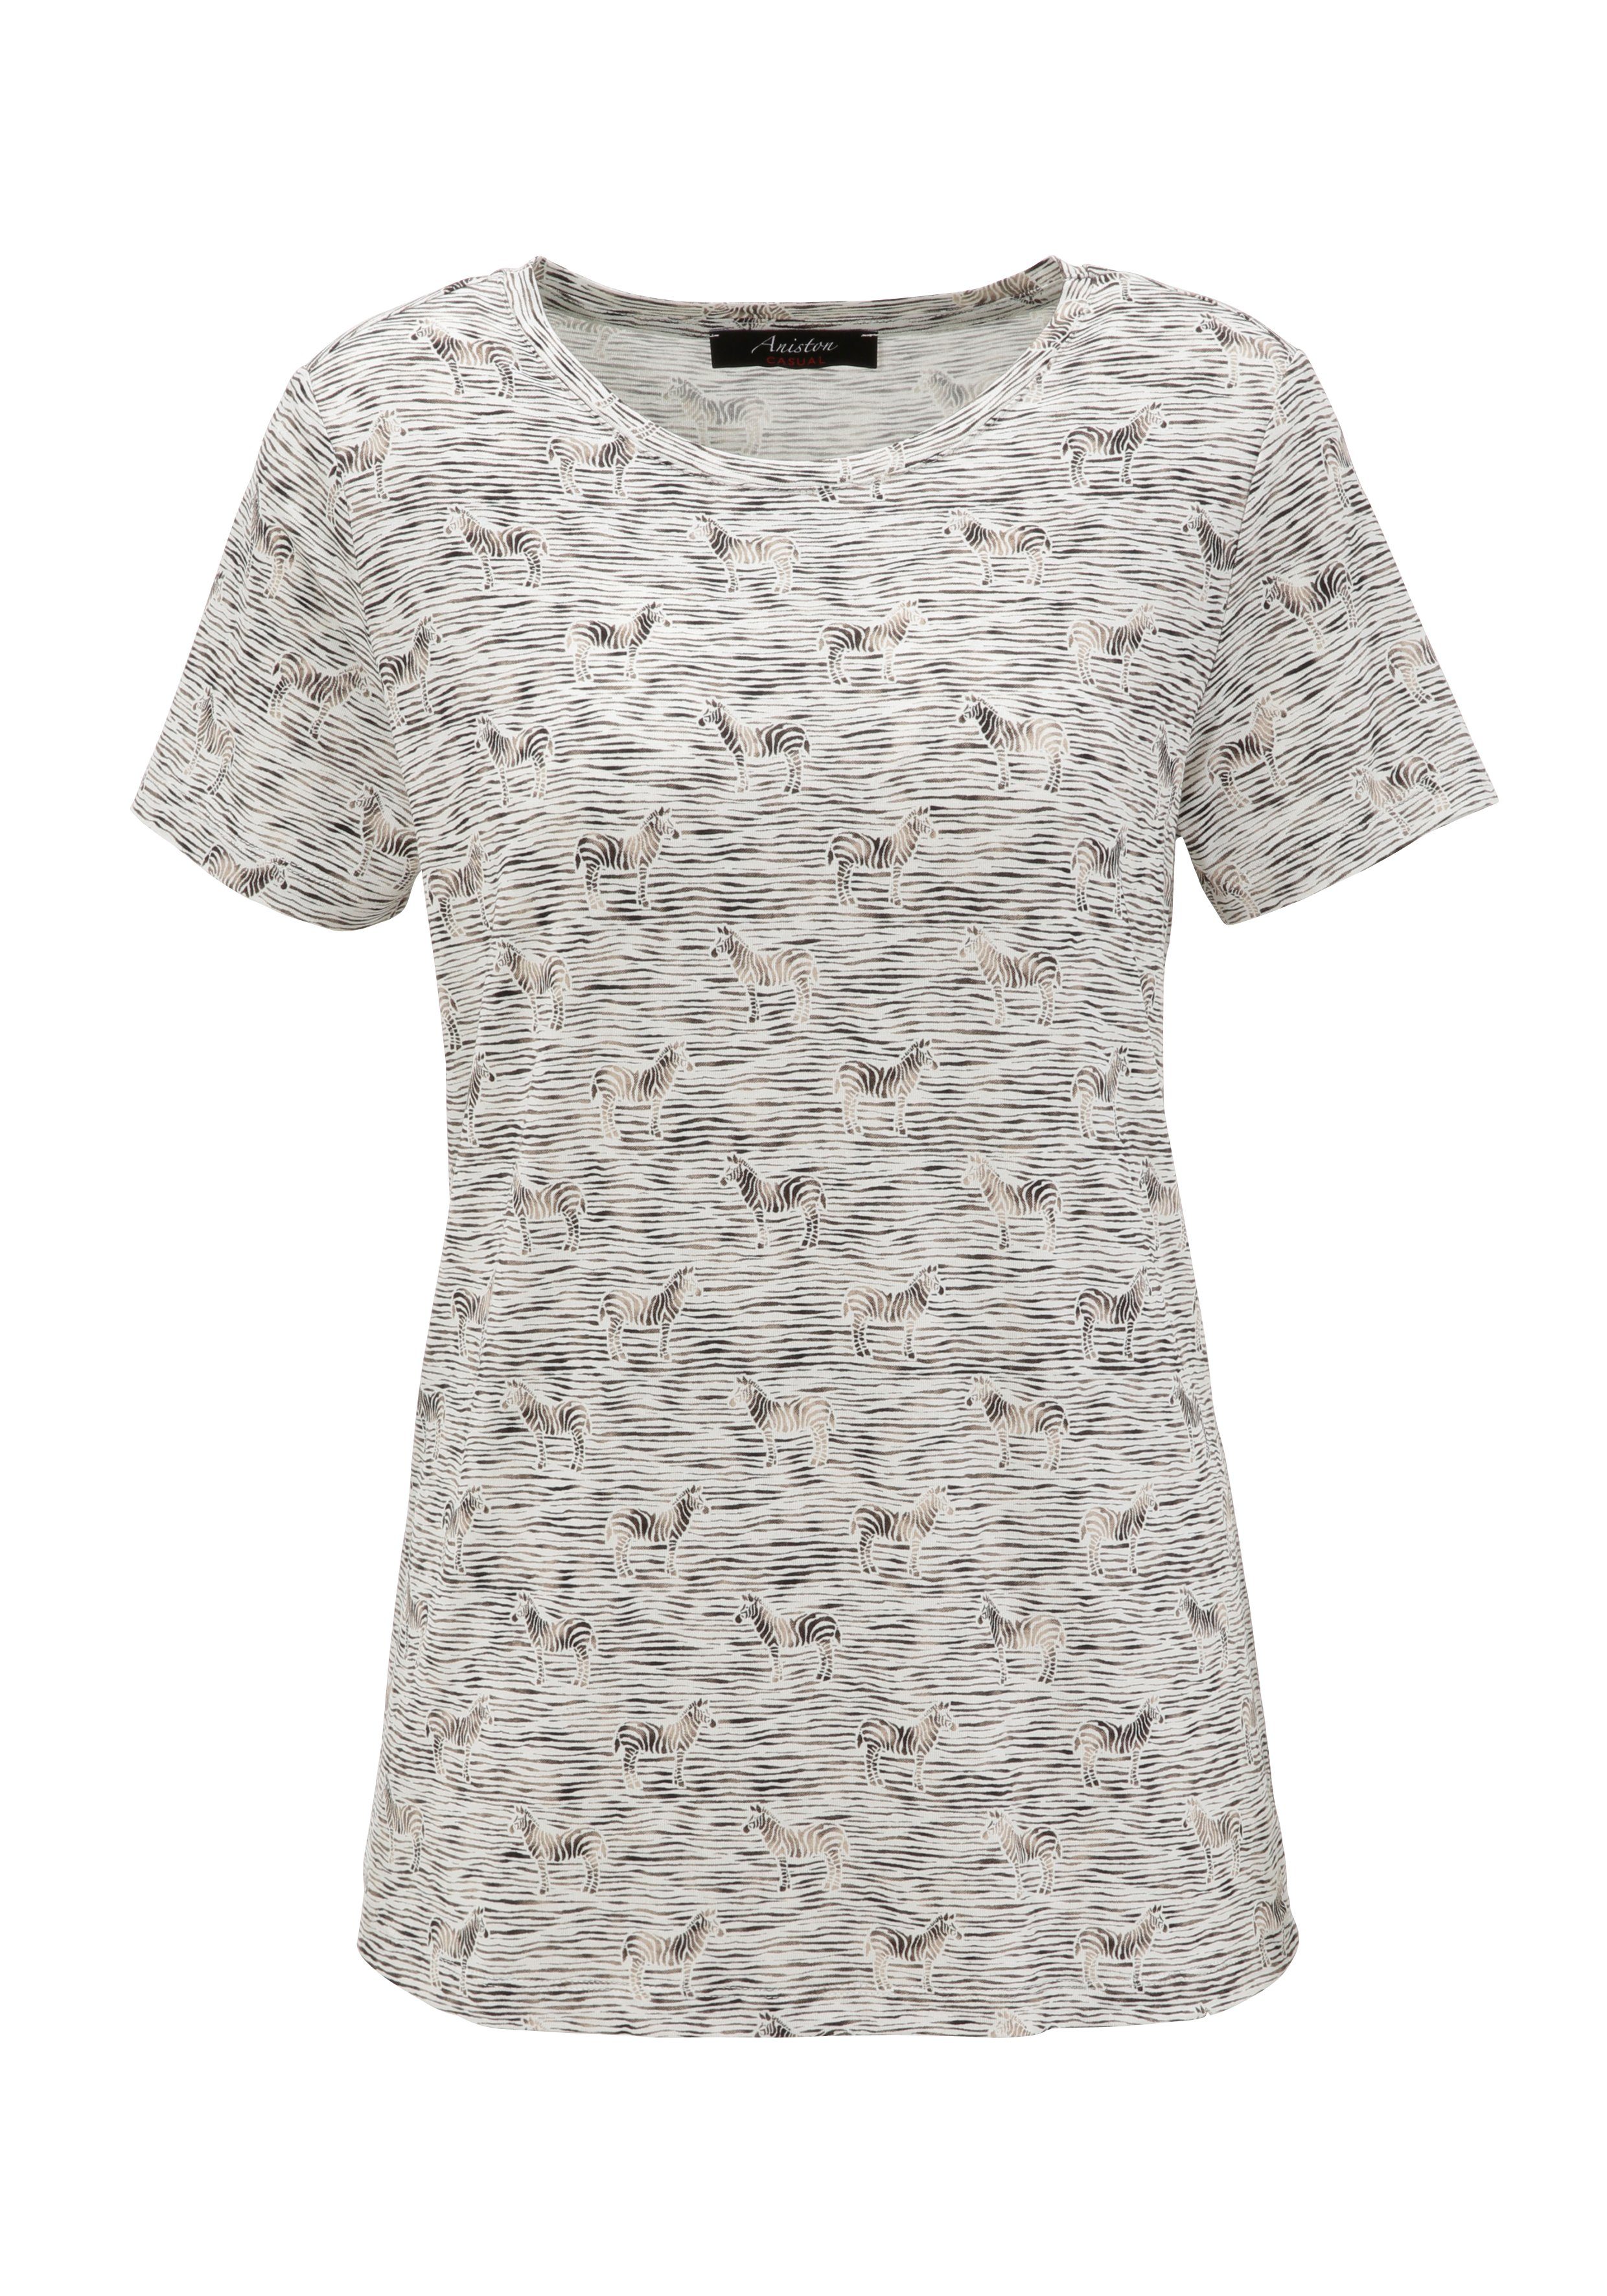 Aniston CASUAL T-Shirt schimmernder Druck mit Zebras Streifen und leicht